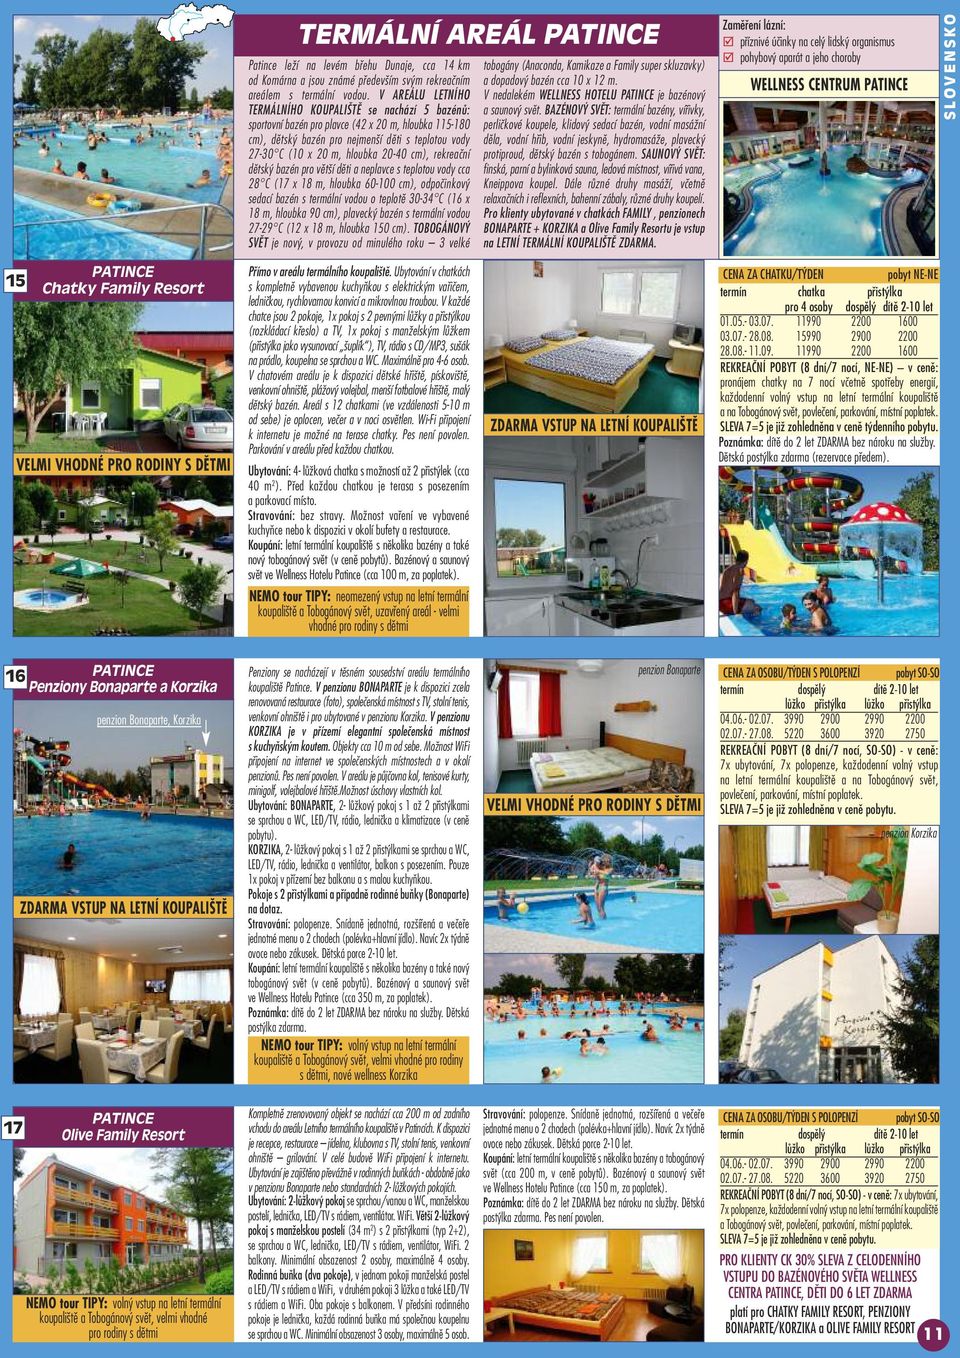 V AREÁLU LETNÍHO TERMÁLNÍHO KOUPALIŠTĚ se nachází 5 bazénů: sportovní bazén pro plavce (42 x 20 m, hloubka 115-180 cm), dětský bazén pro nejmenší děti s teplotou vody 27-30 C (10 x 20 m, hloubka